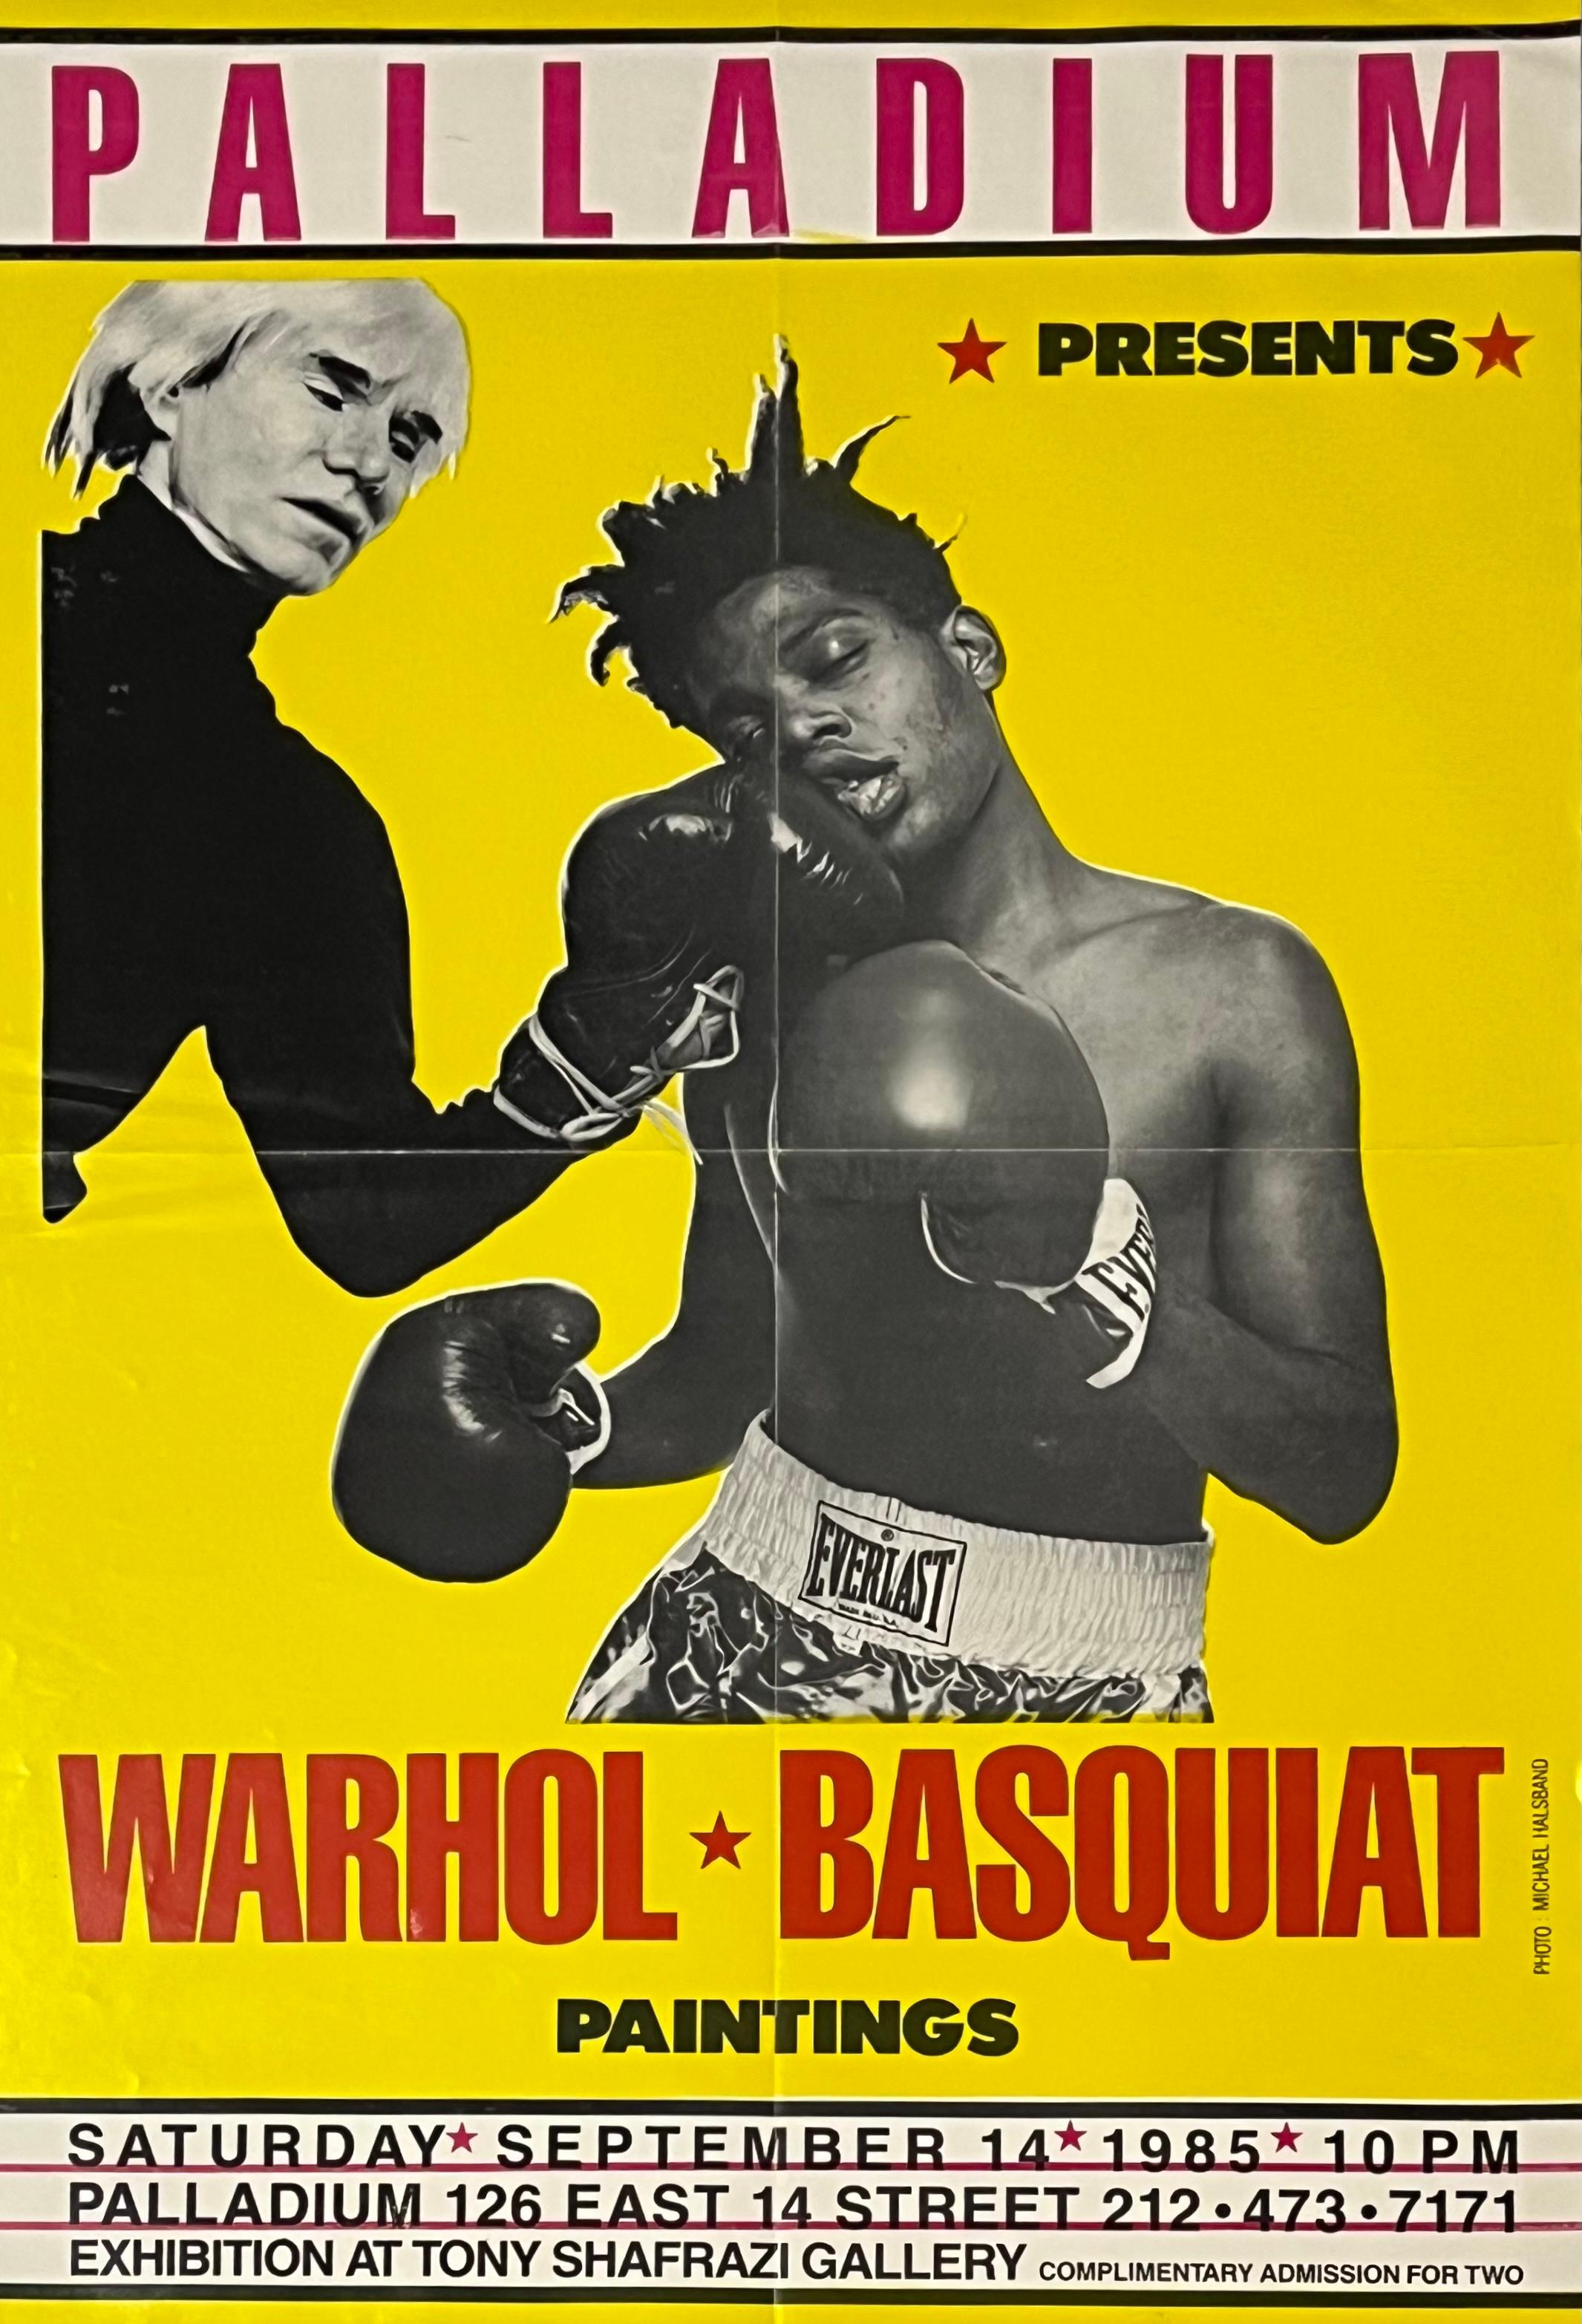 Andy Warhol Jean-Michel Basquiat Boxing posters 1985 : Ensemble complet de 2 œuvres : 
Les objets de collection Basquiat/Warhol les plus recherchés - présentés sous la forme d'une série complète de 2. Publié par Tony Shafrazi et Bruno Bischofberger